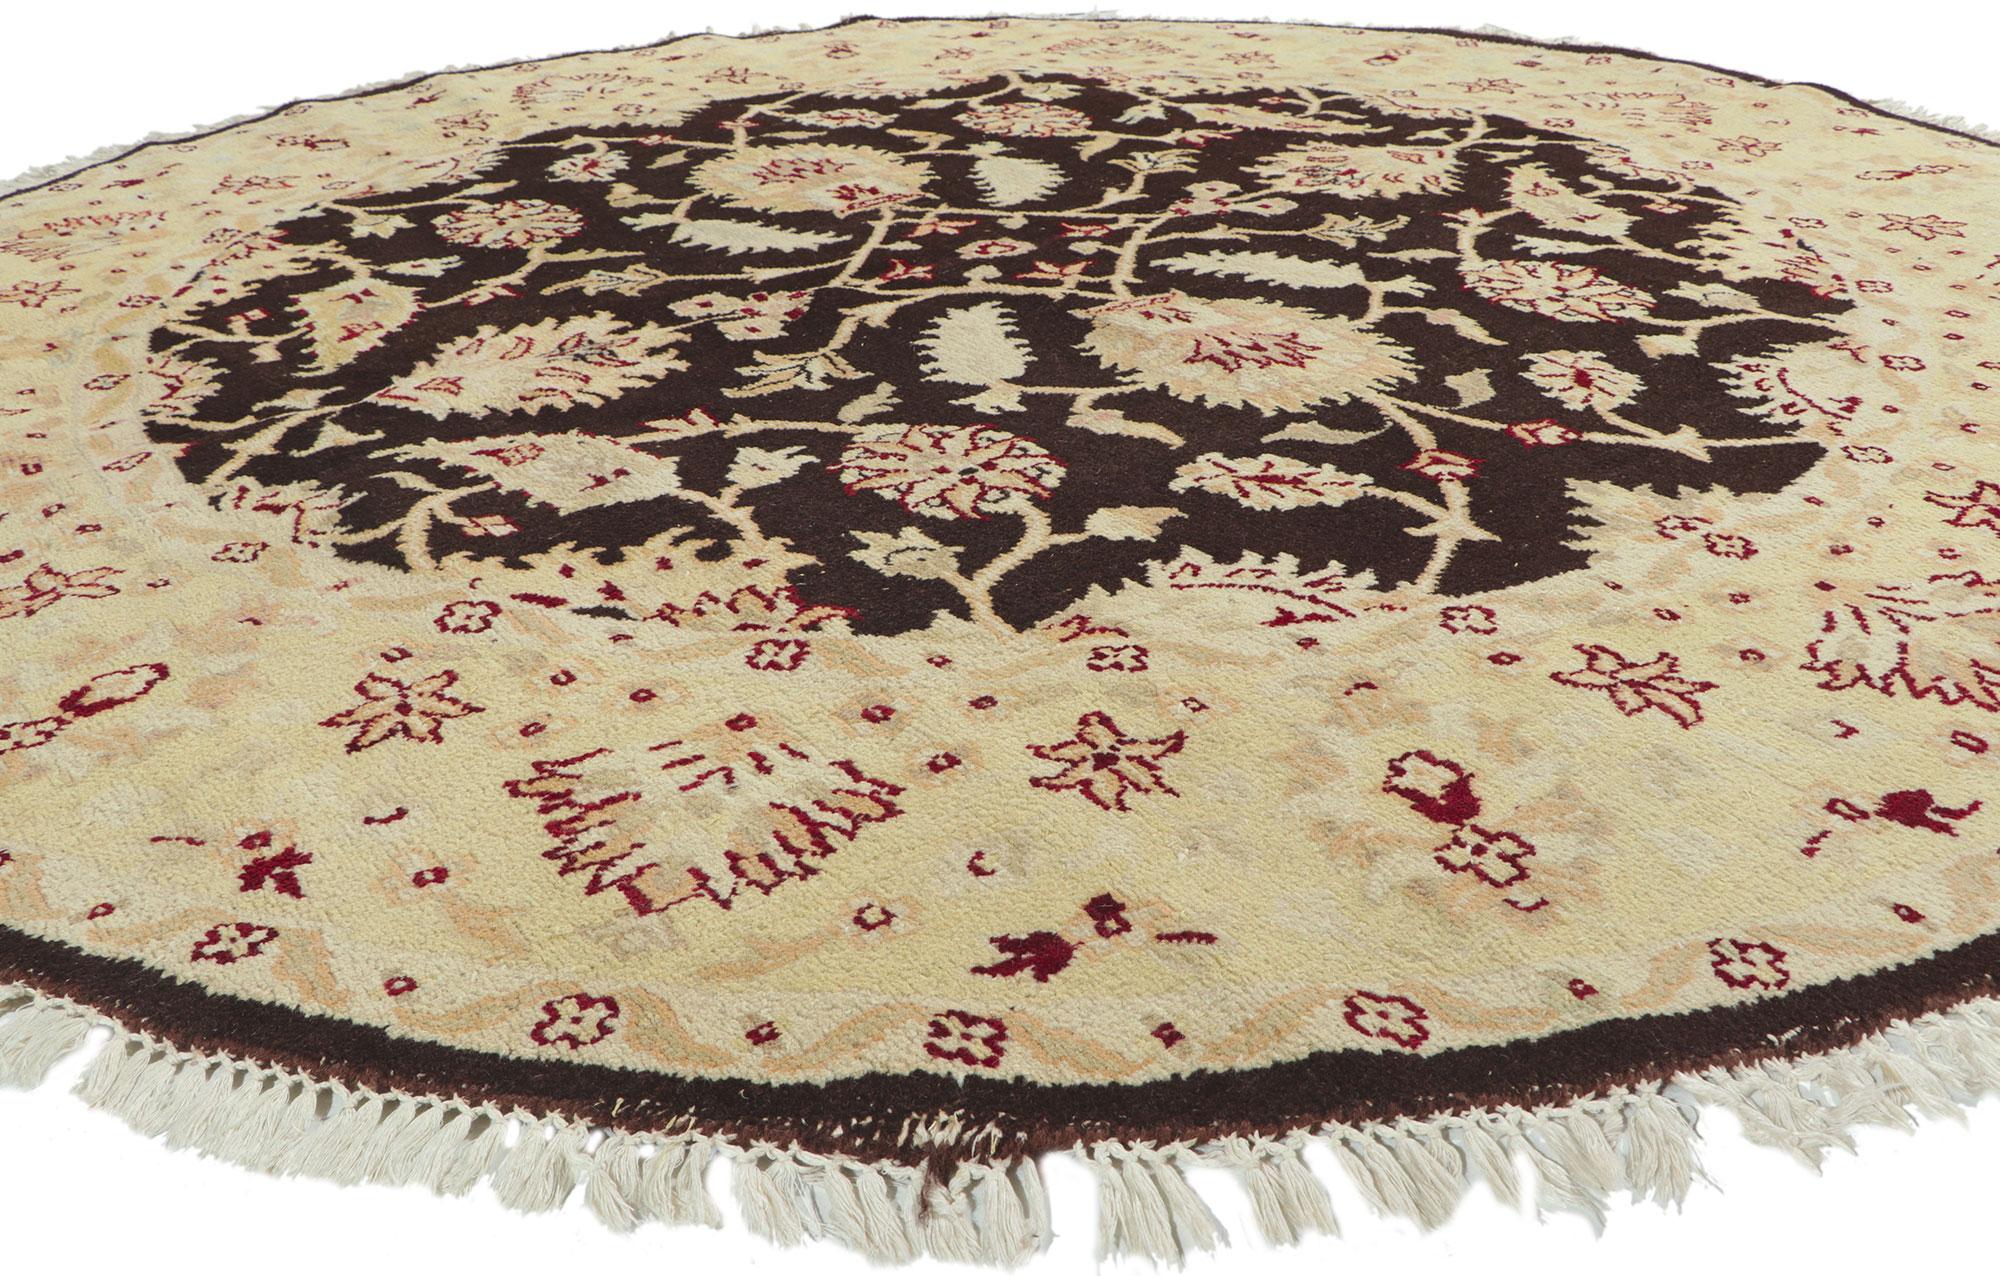 76922 Runder Teppich im persischen Vintage-Stil 08'00 x 08'01. Dekorative Details und mühelose Schönheit treffen in diesem handgeknüpften, runden indischen Teppich aus Wolle auf schräg-feminine Vibes und traditionellen persischen Stil. Im